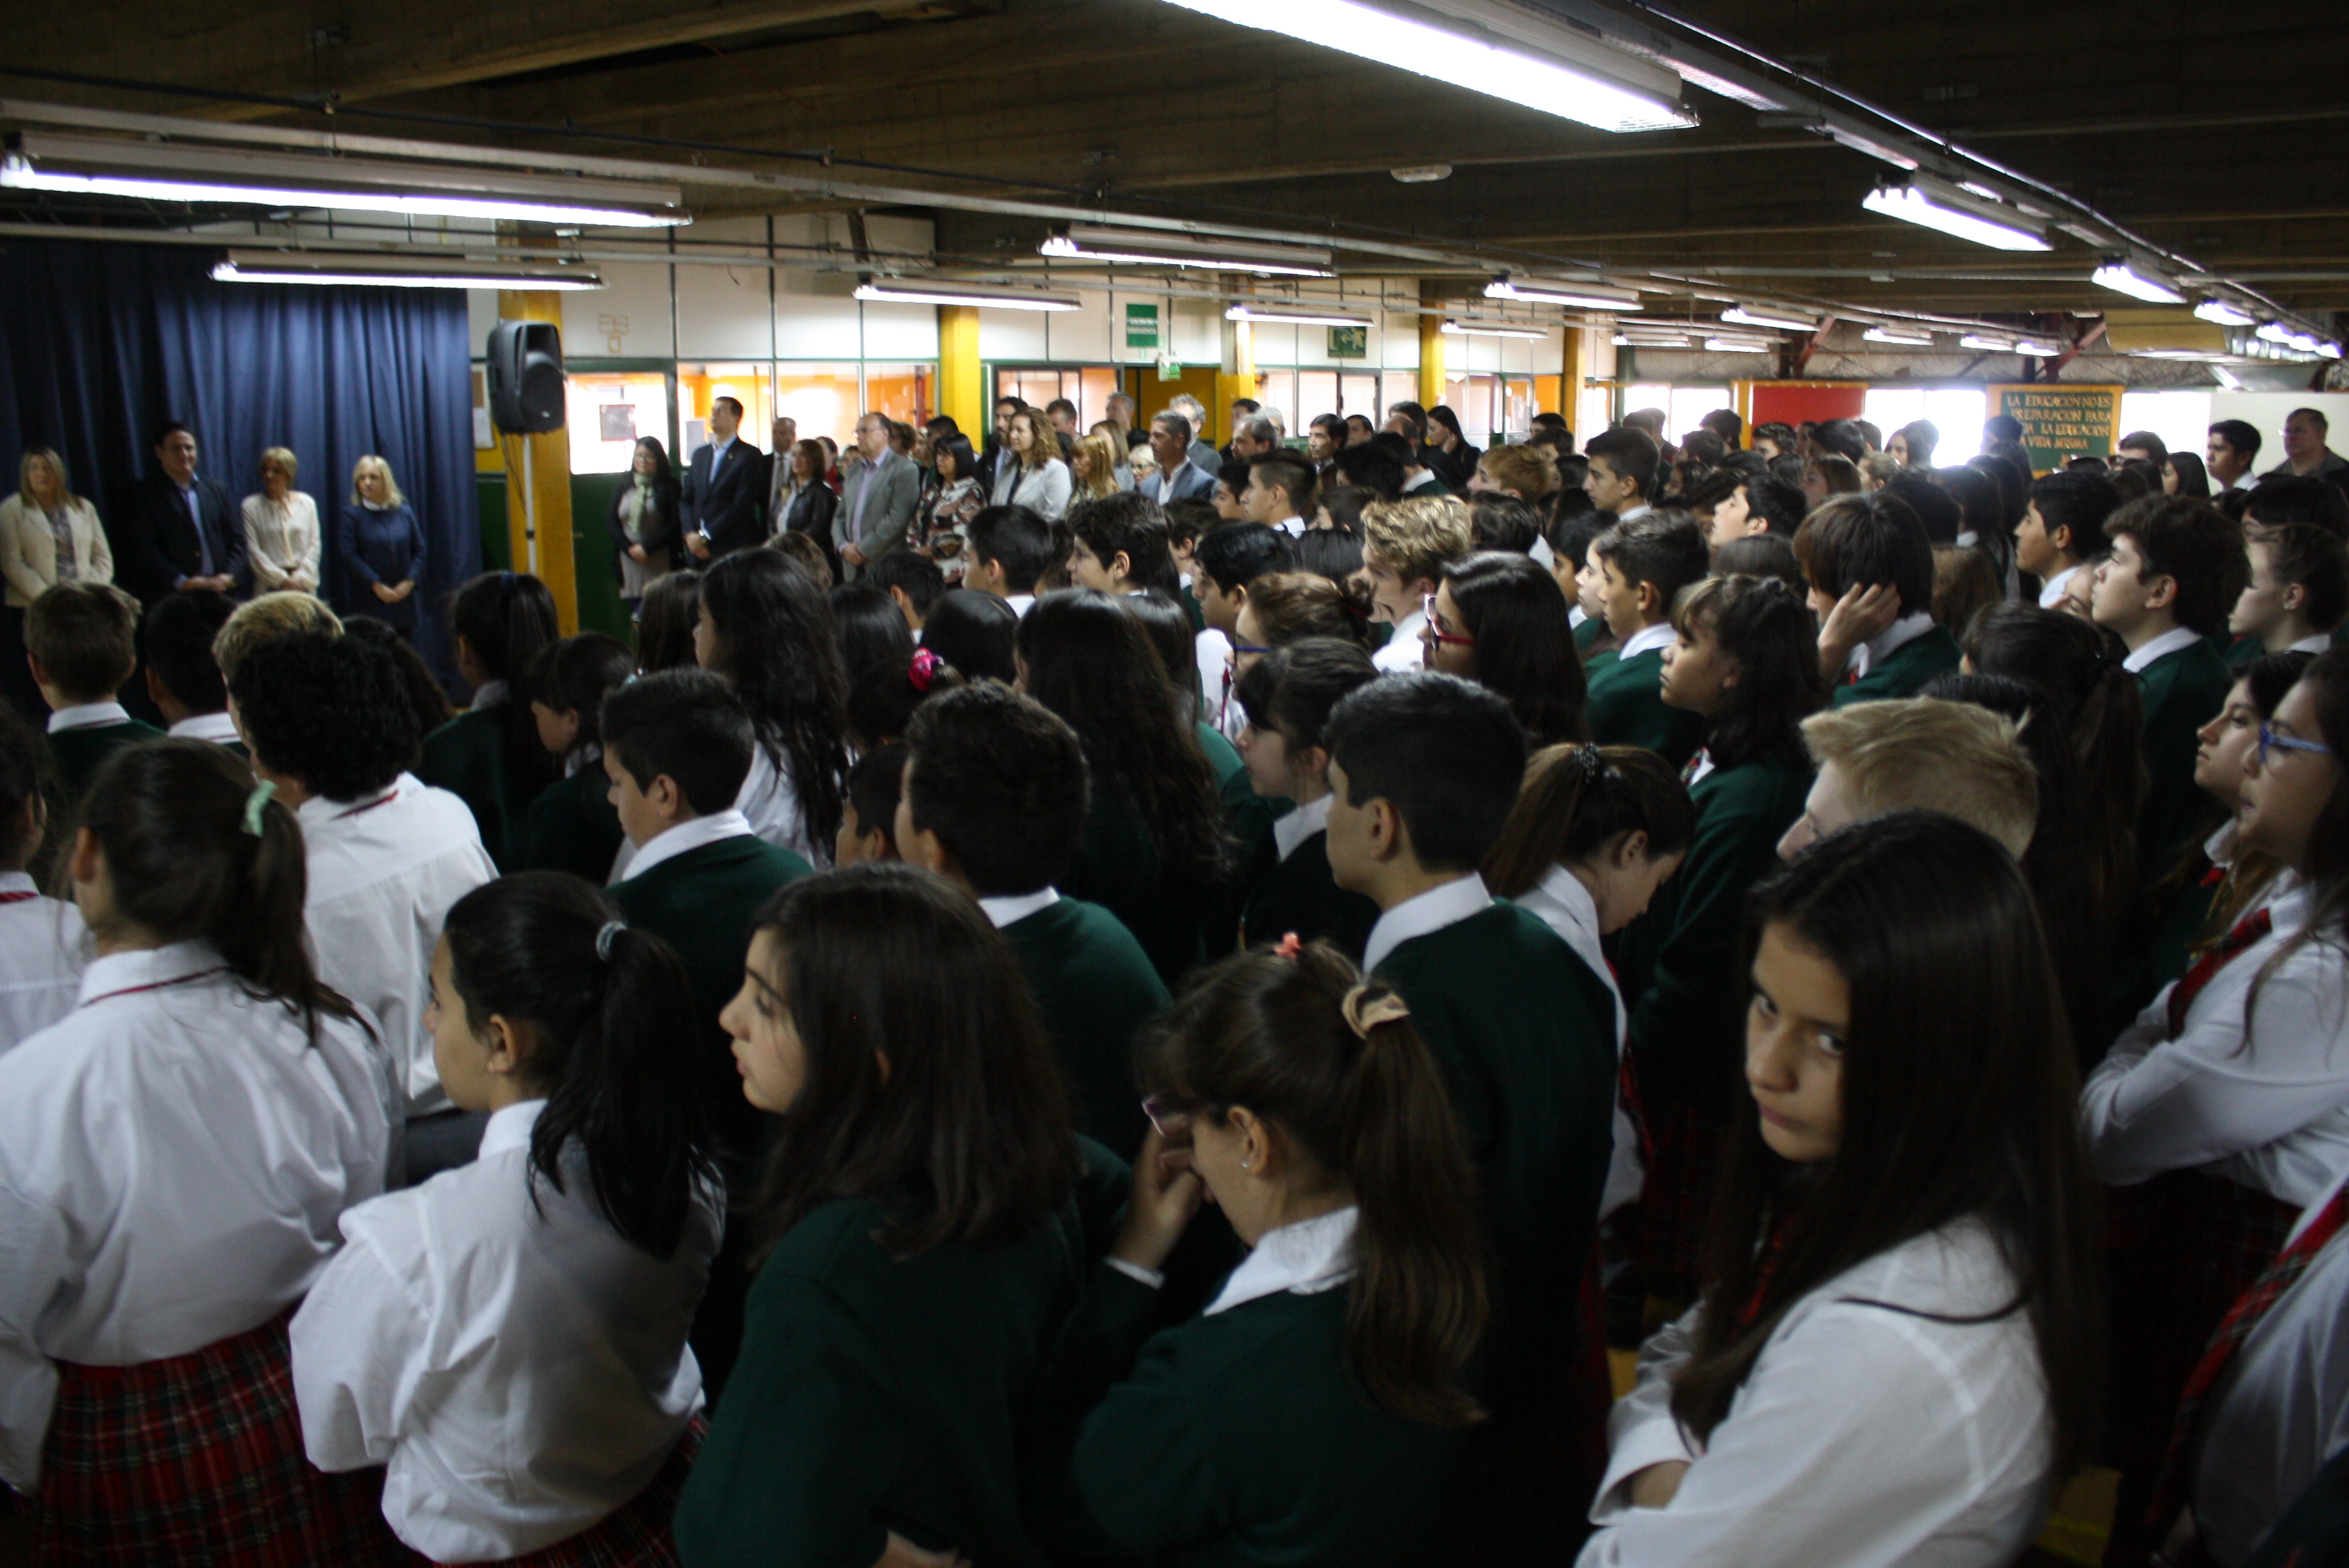 El acto se realizó ante el alumnado y sus profesores formados en el salón principal del primer piso.